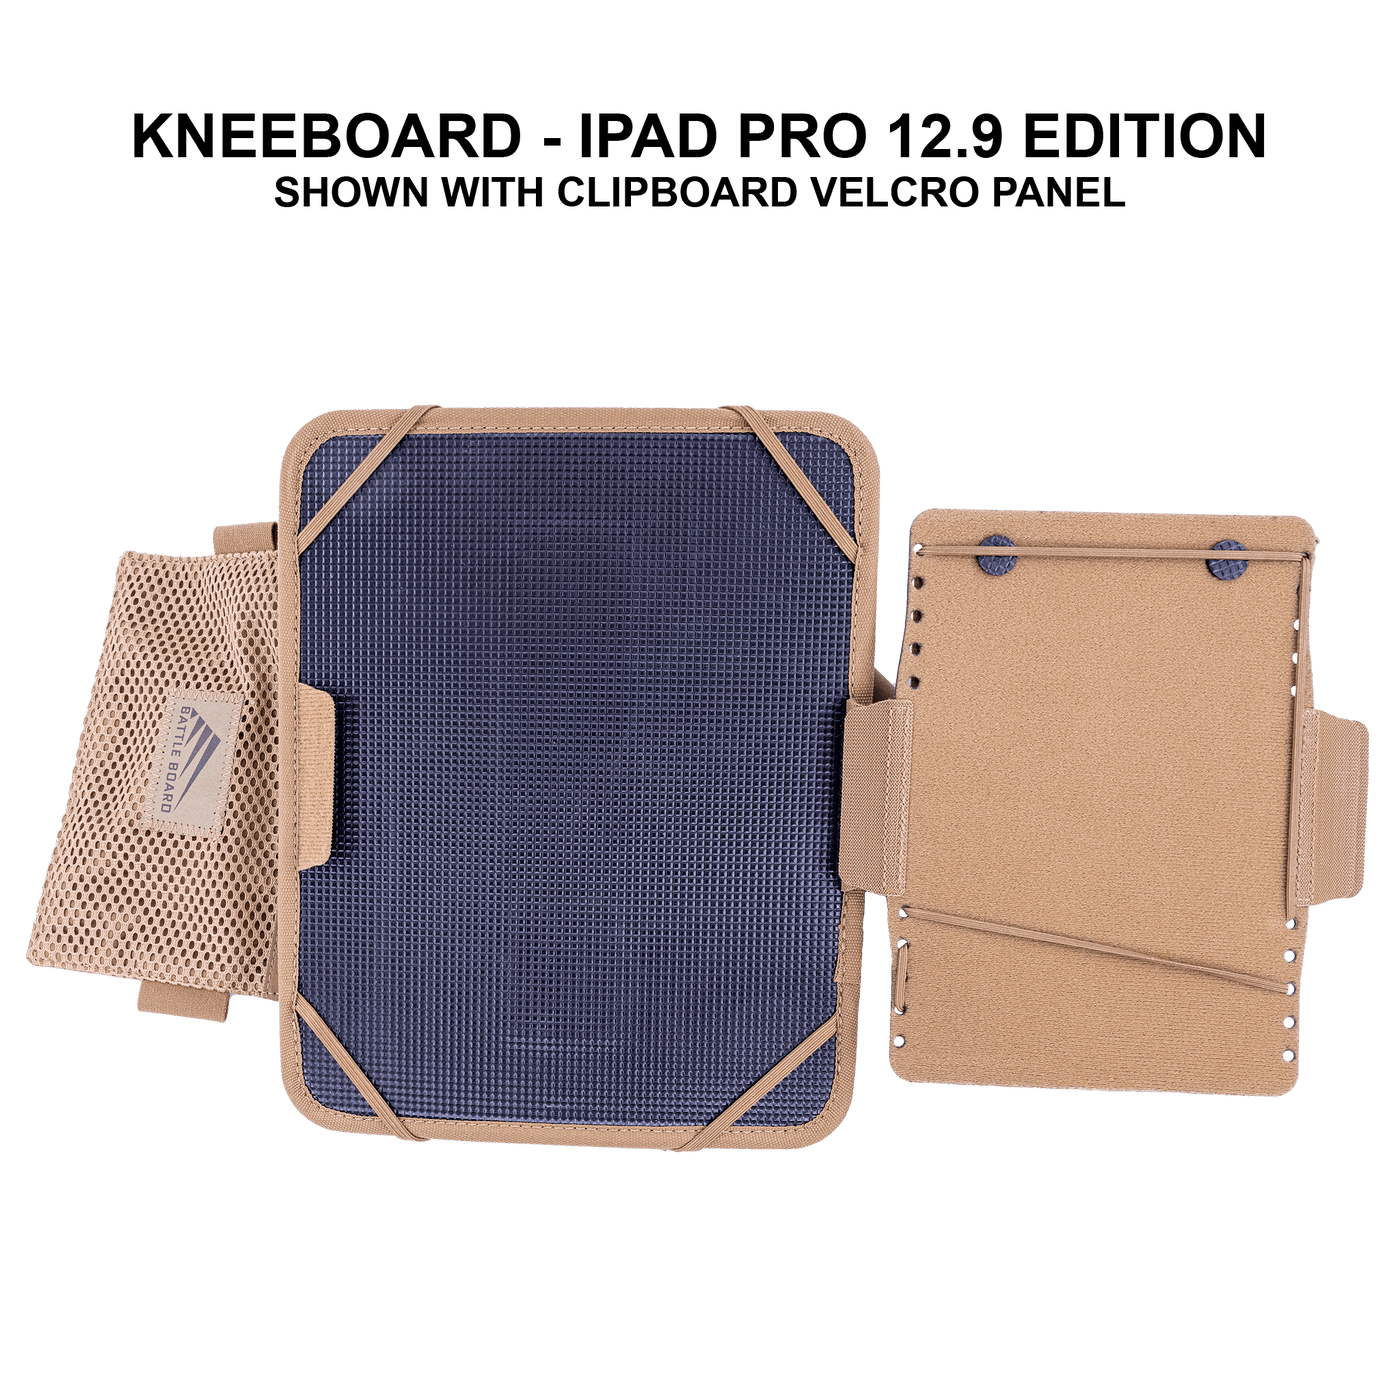 Kneeboard - iPad Pro 12.9 Edition